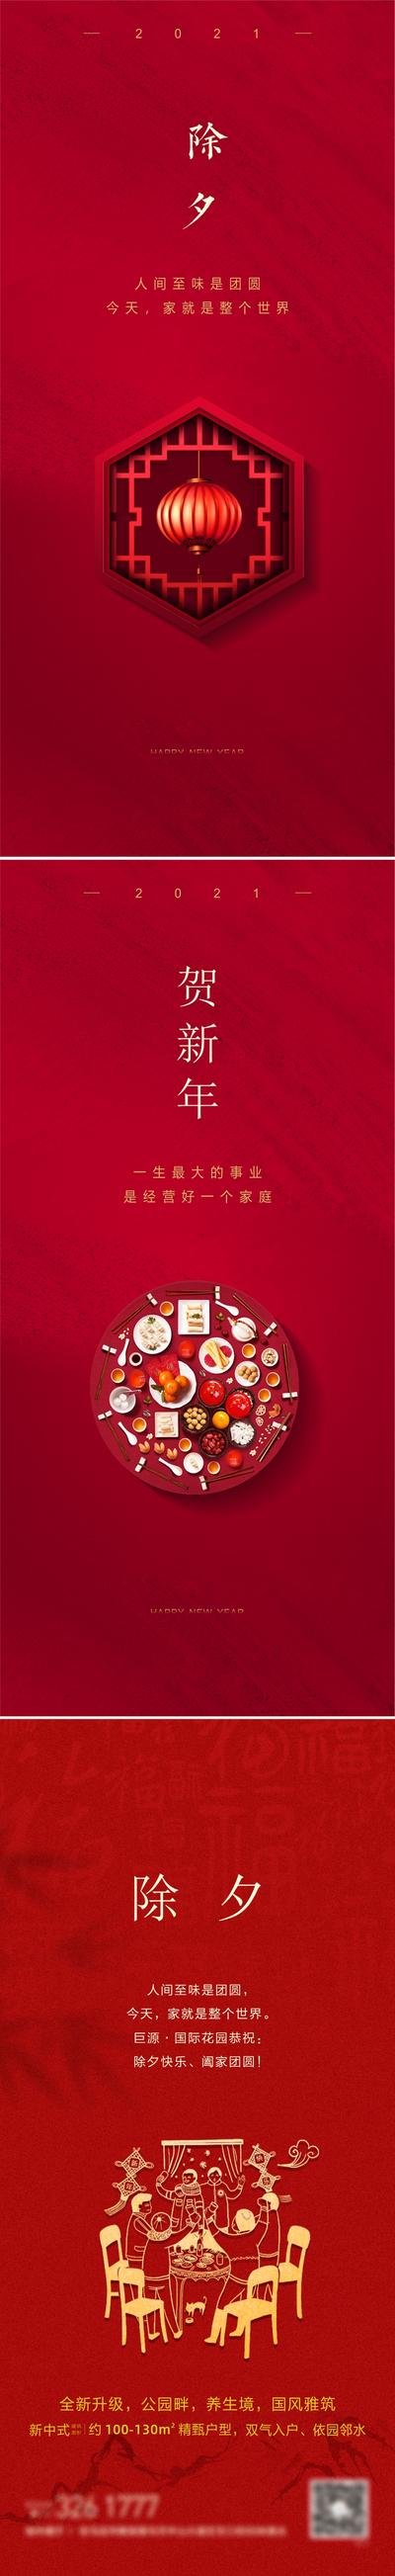 南门网 海报 除夕 春节 中国传统节日 灯笼 年夜饭 